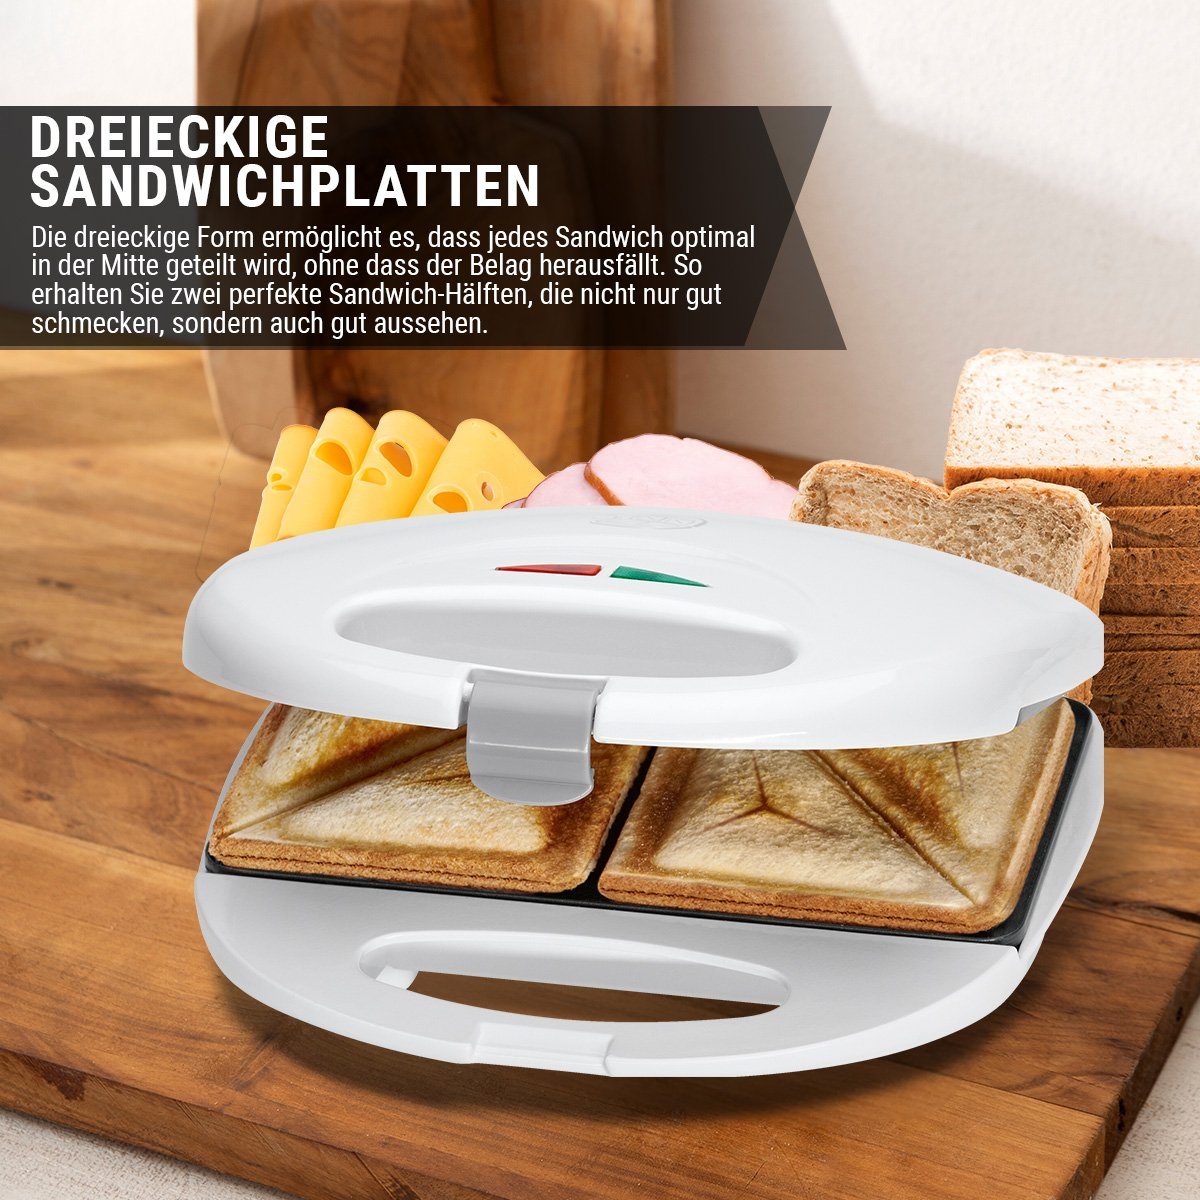 CLATRONIC Sandwichmaker dreieckigen 2 für ST weiß 3477, mit Sandwiches Sandwichplatten